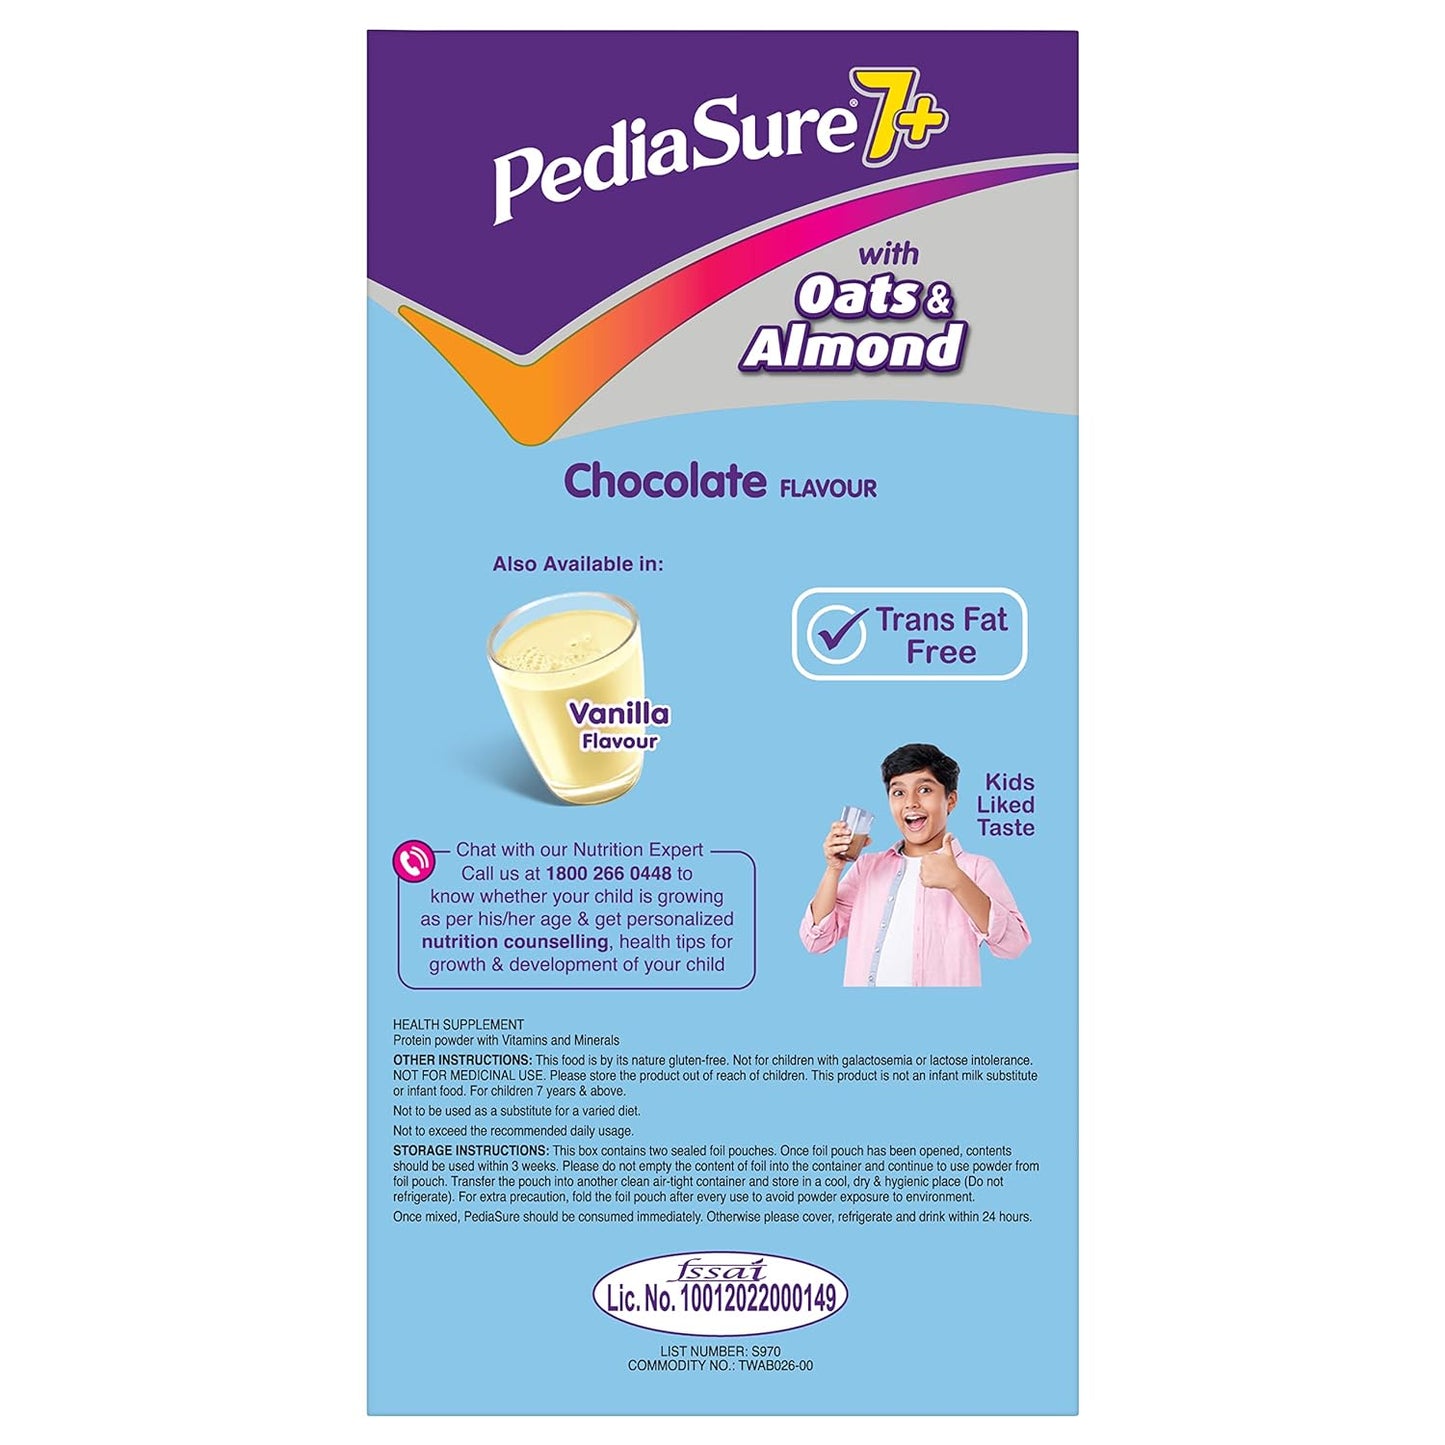 Pediasure 7 Plus 巧克力味补充装，800 克